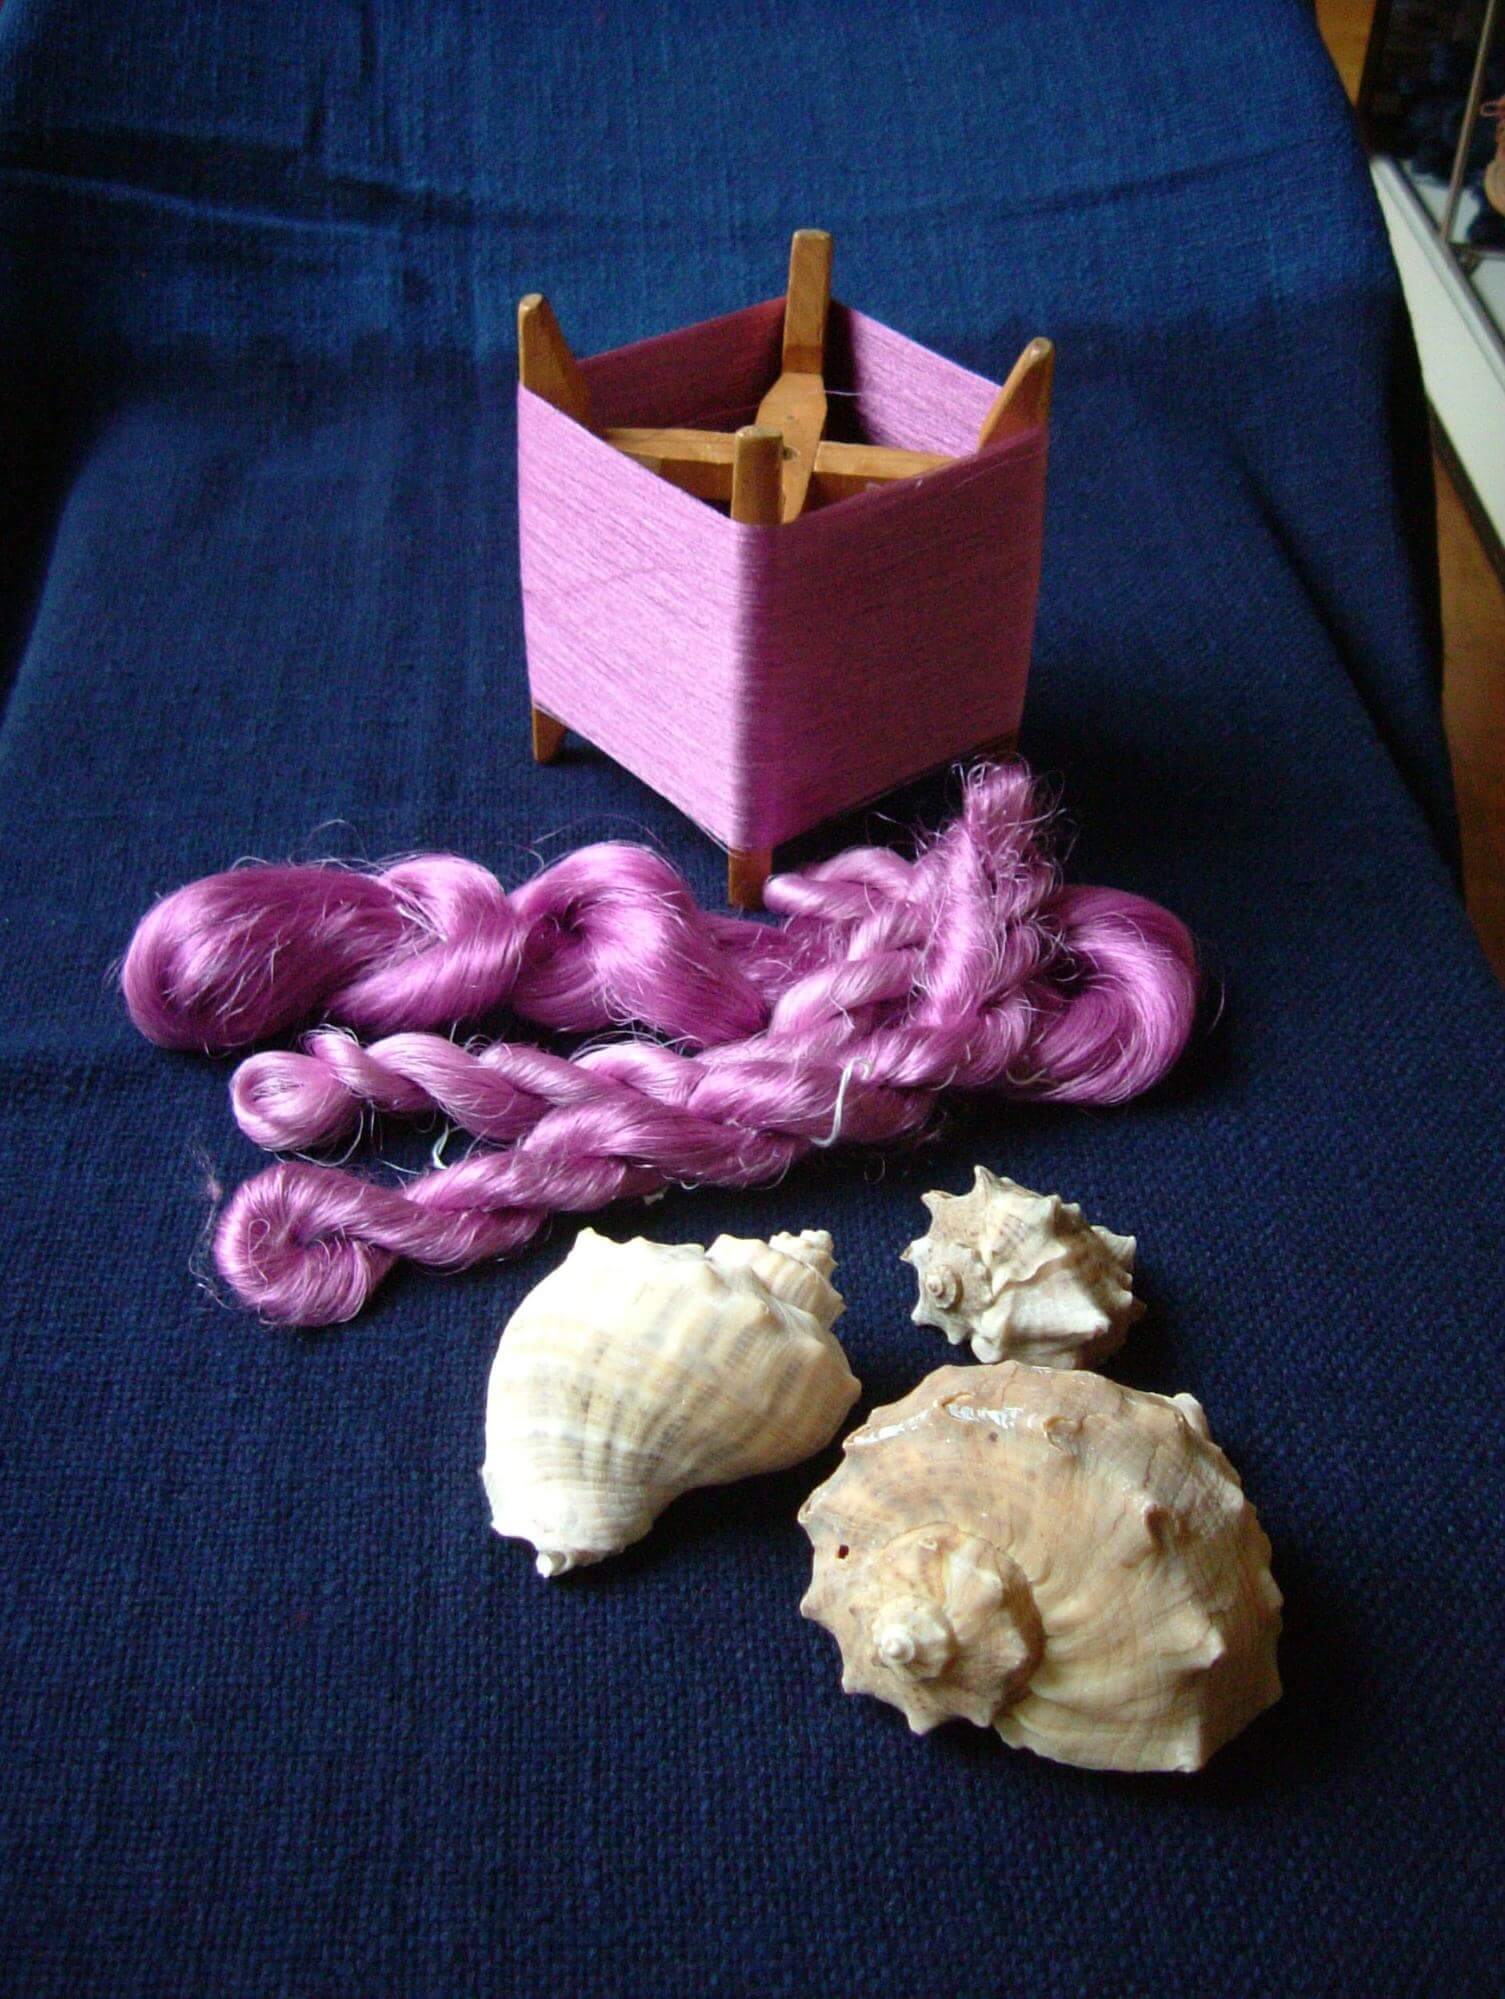 世界で最も高貴な色 大和貝紫 工房のこと 綾の手紬染織工房